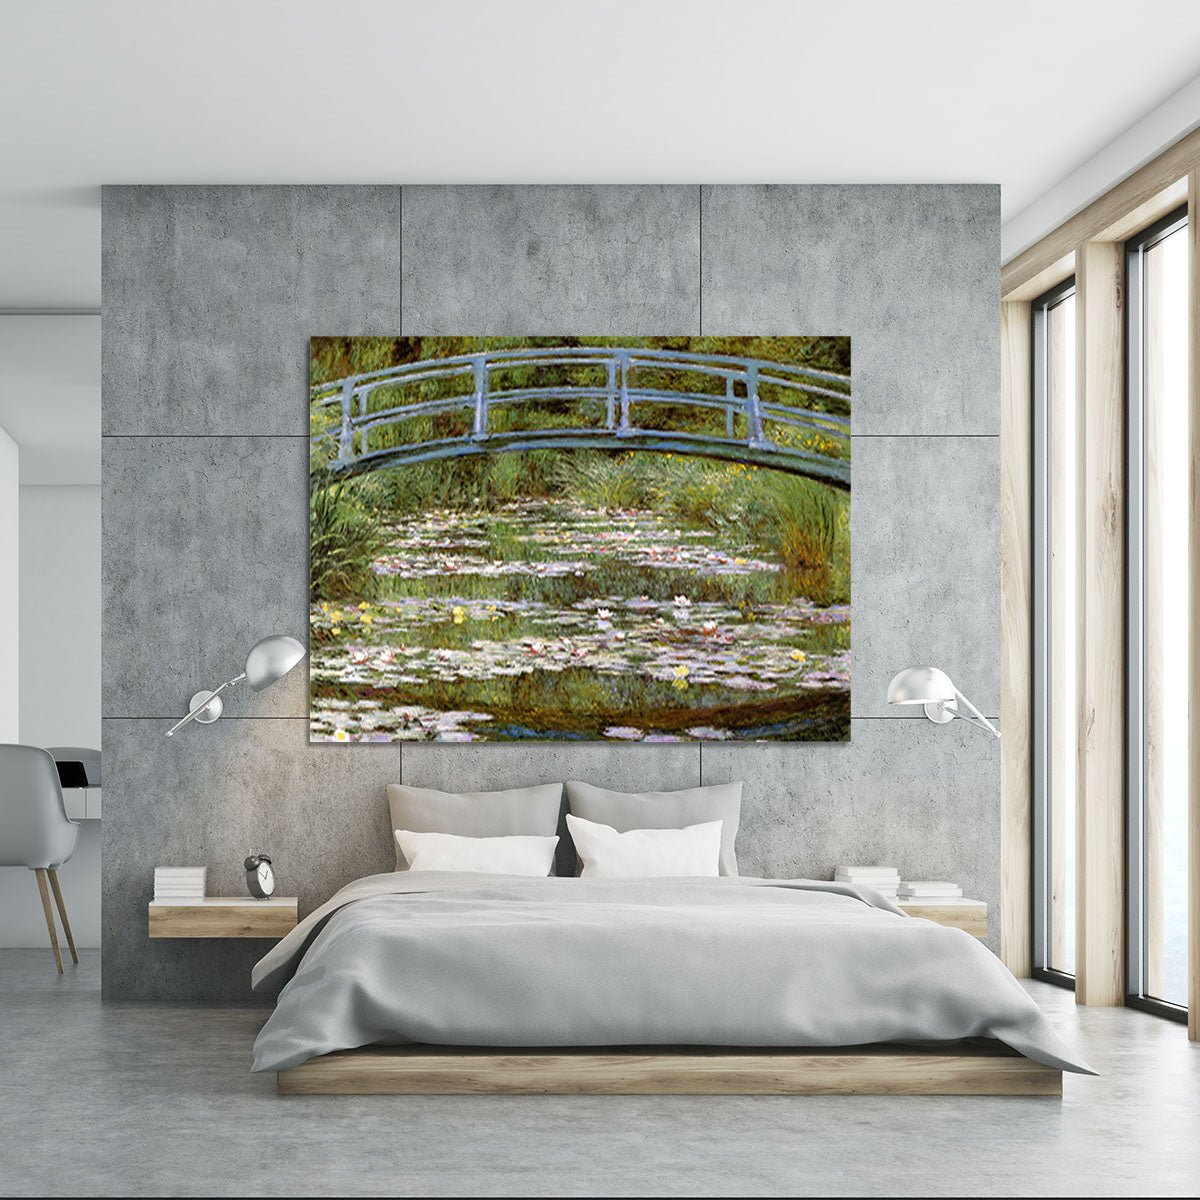 Le Pont Japonais by Monet Canvas Print or Poster - Canvas Art Rocks - 5